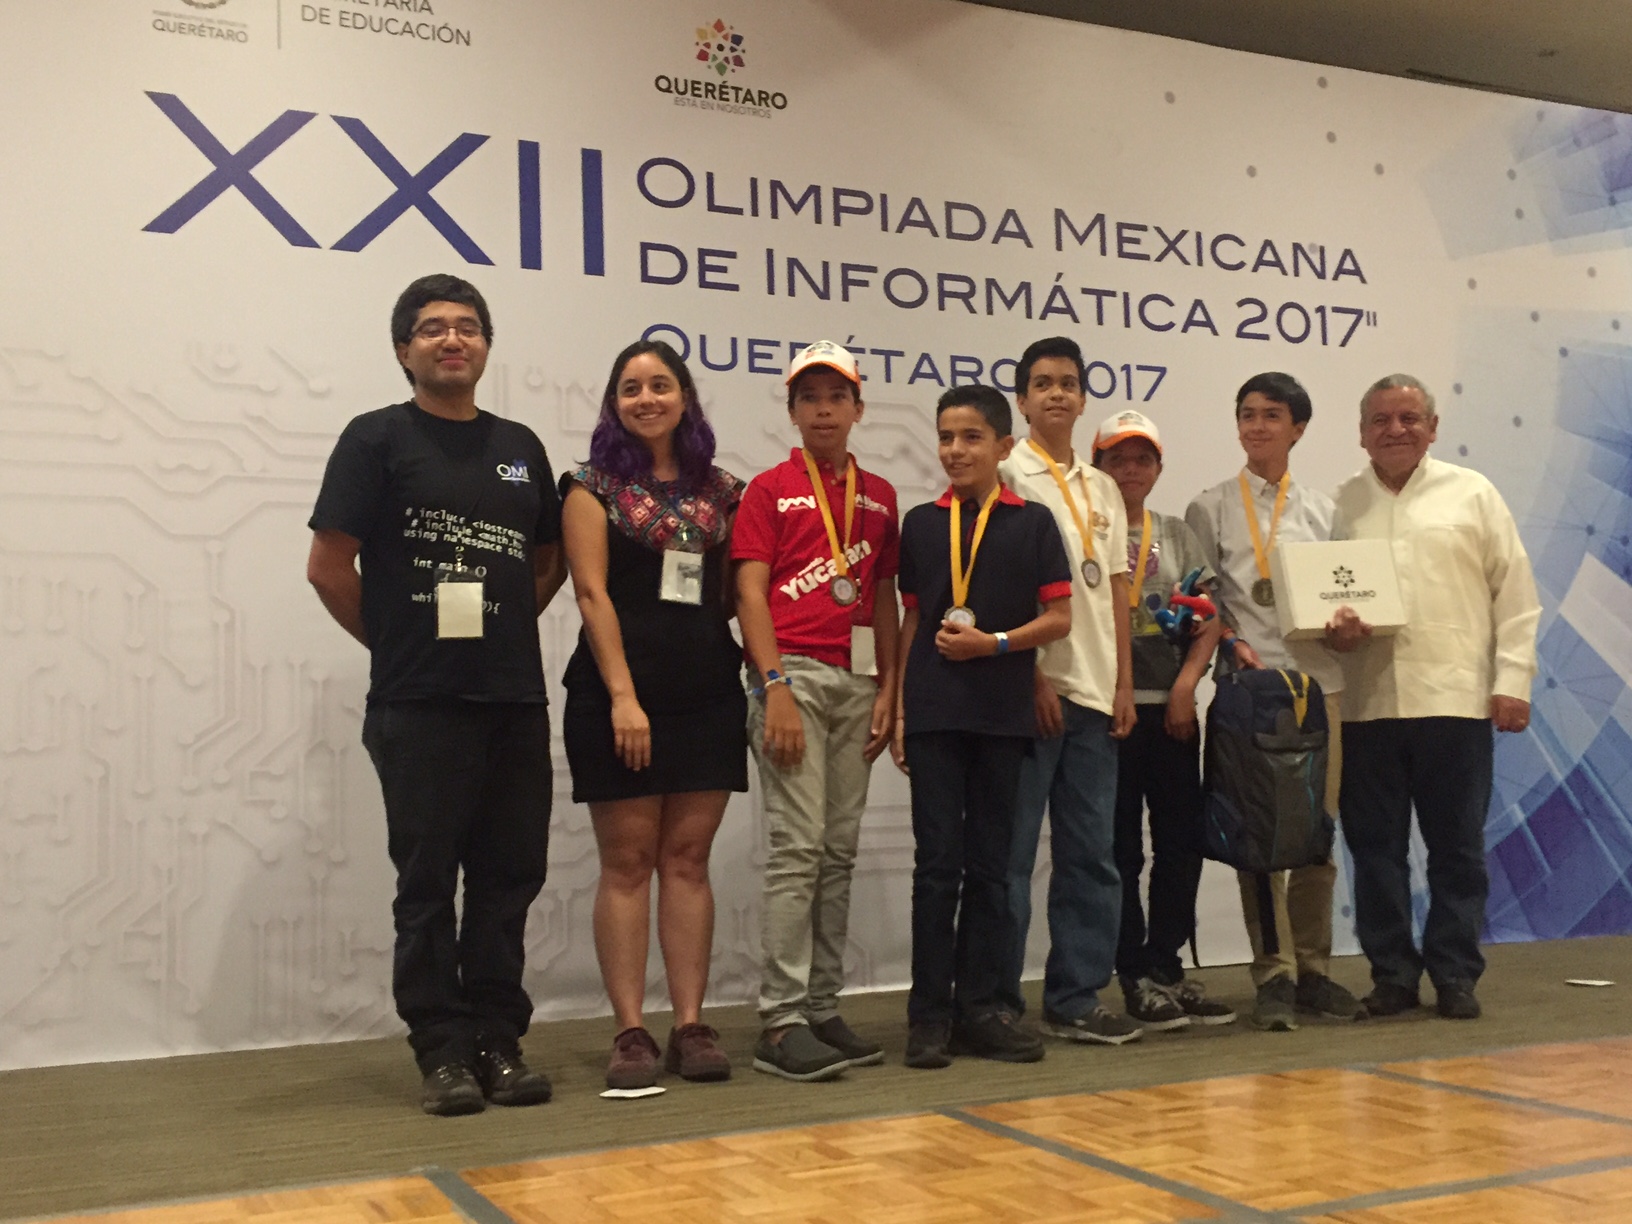  Concluye Olimpiada Mexicana de Informática 2017 realizada en Querétaro